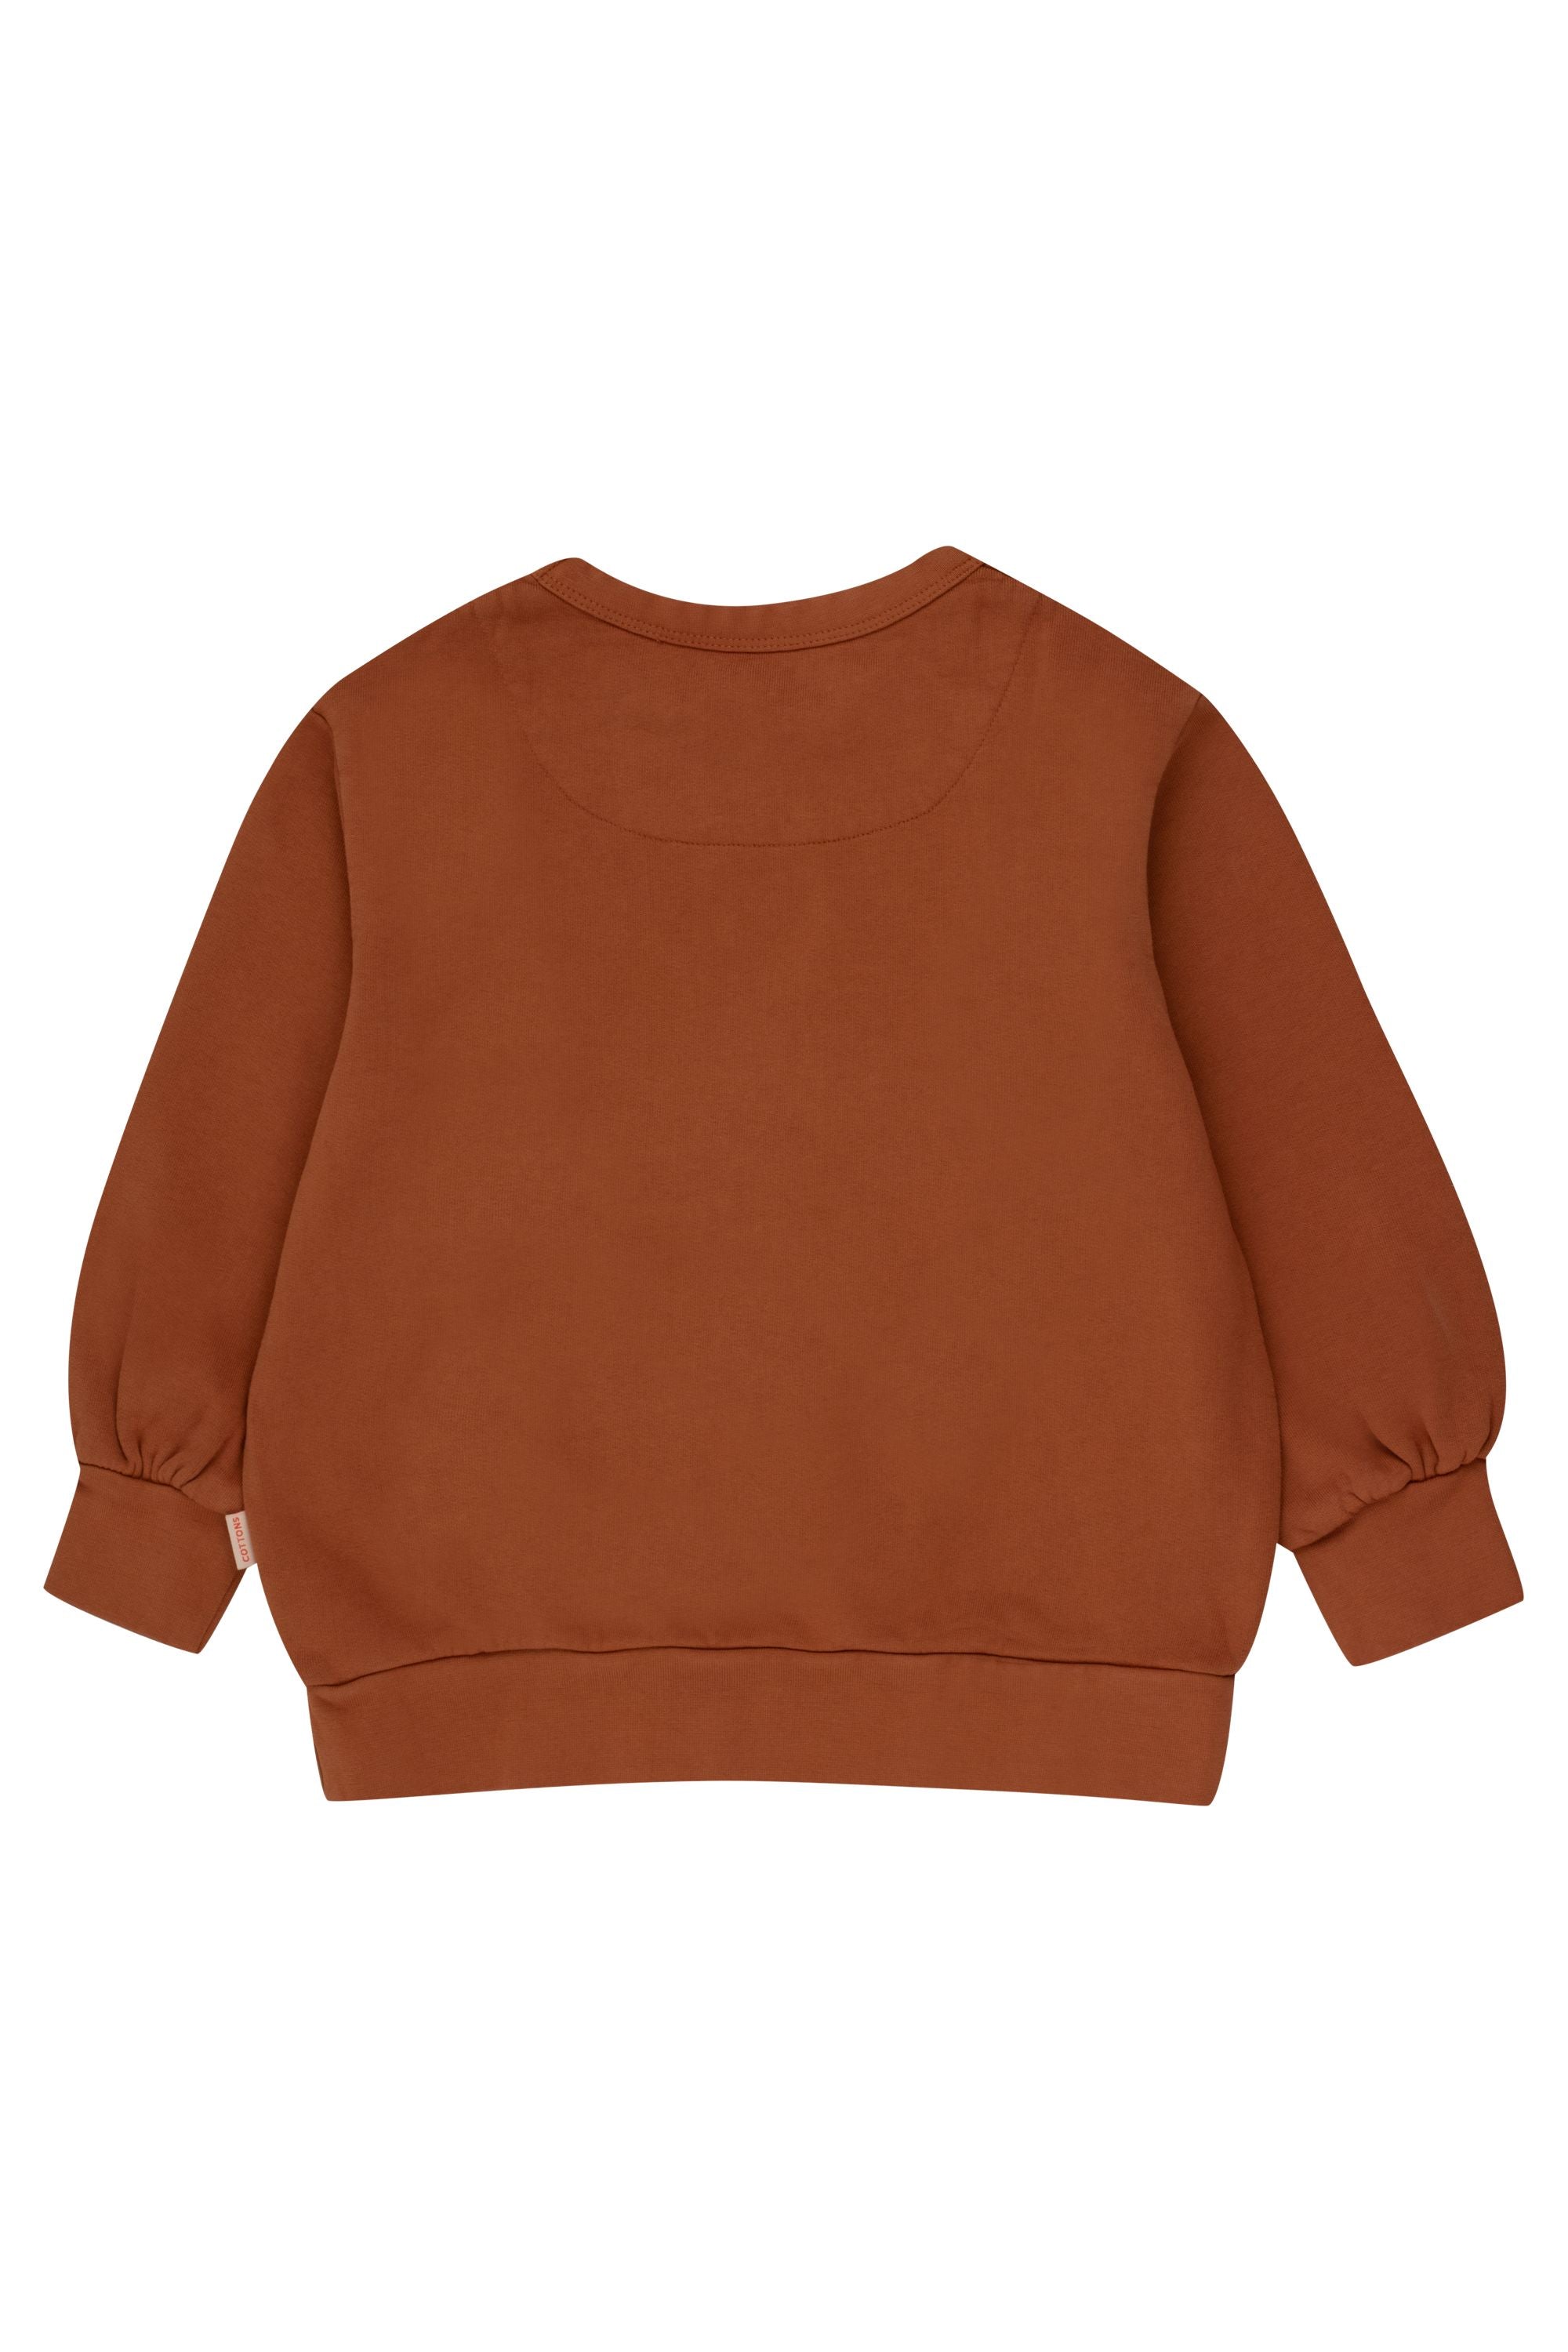 TinyCottons Merci Sweatshirt, Brown